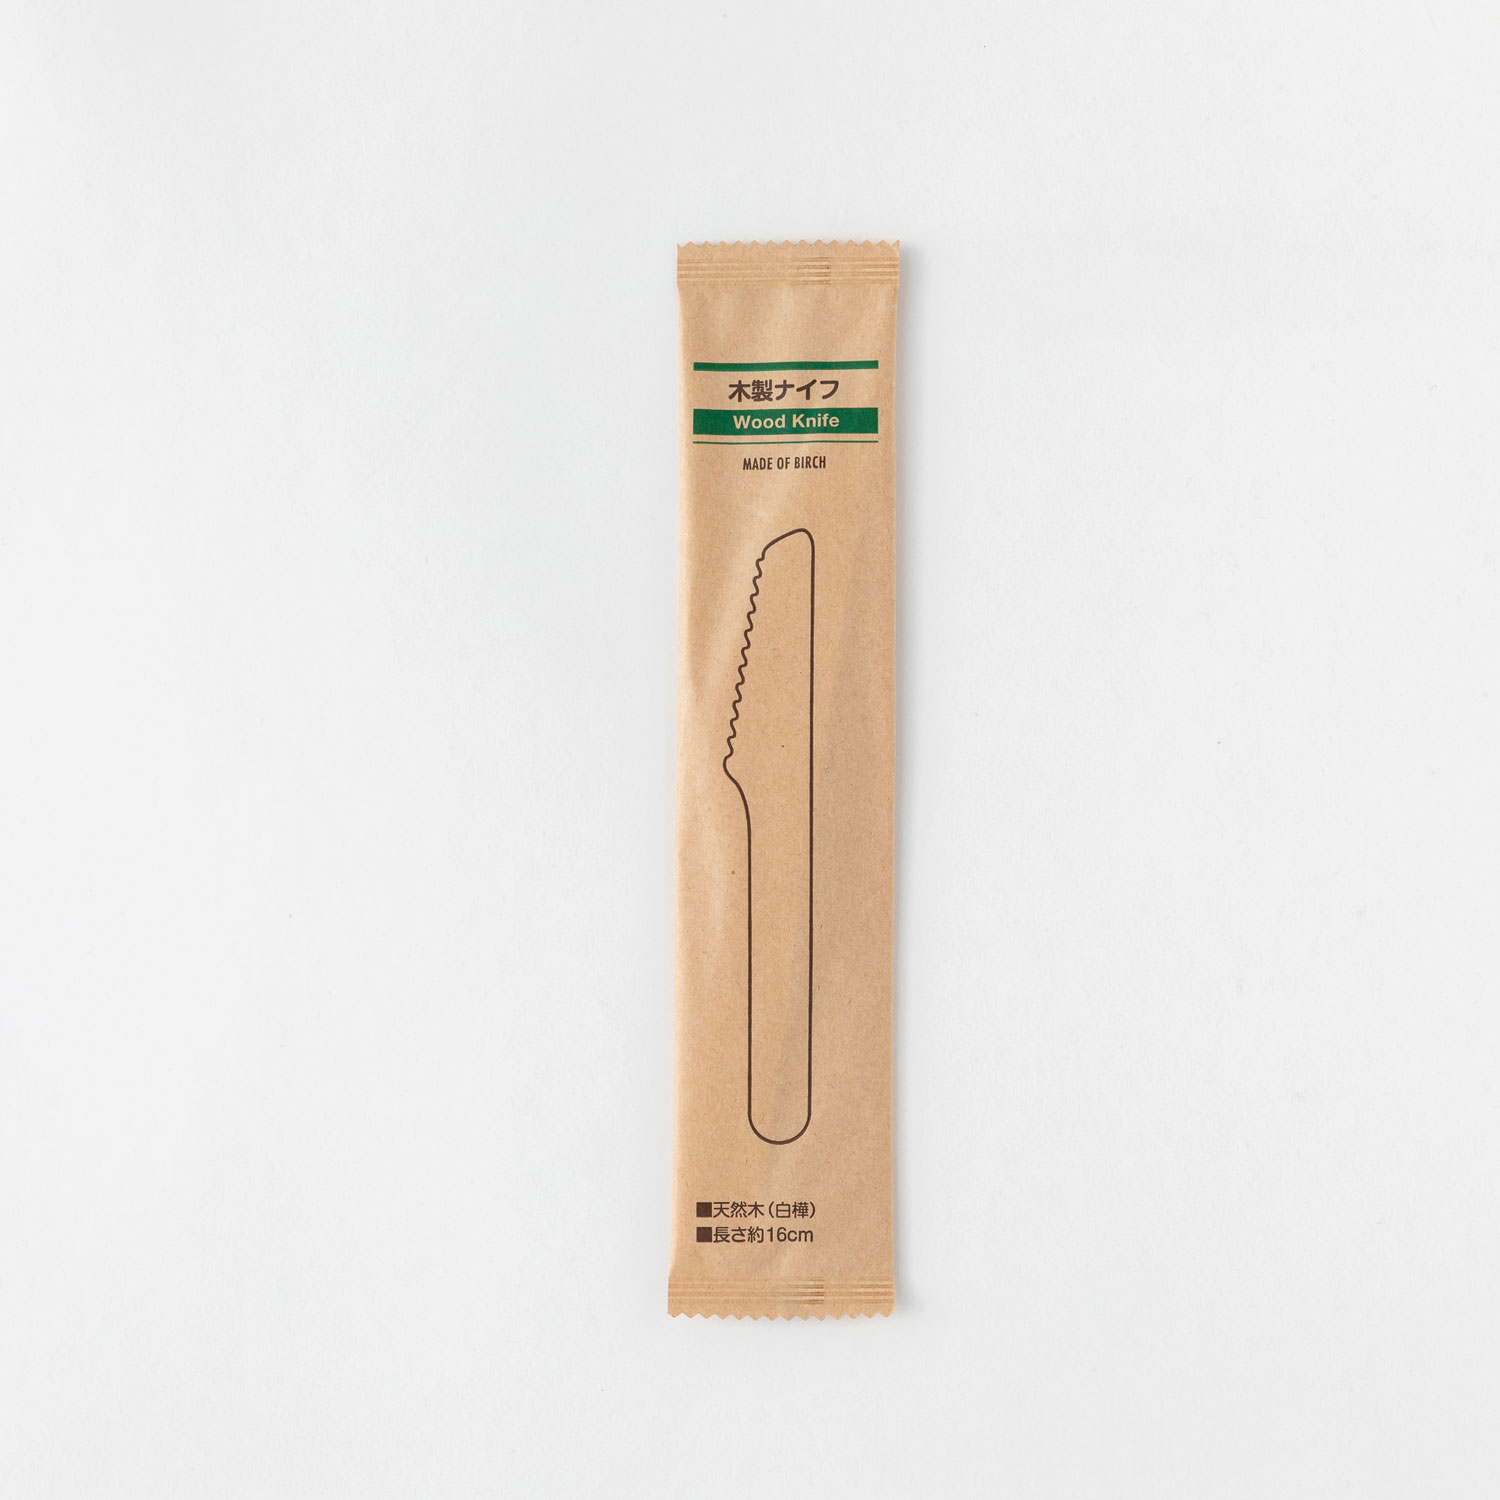 使い捨てカトラリー 木製ナイフ160 紙完封(茶色) アサヒグリーン